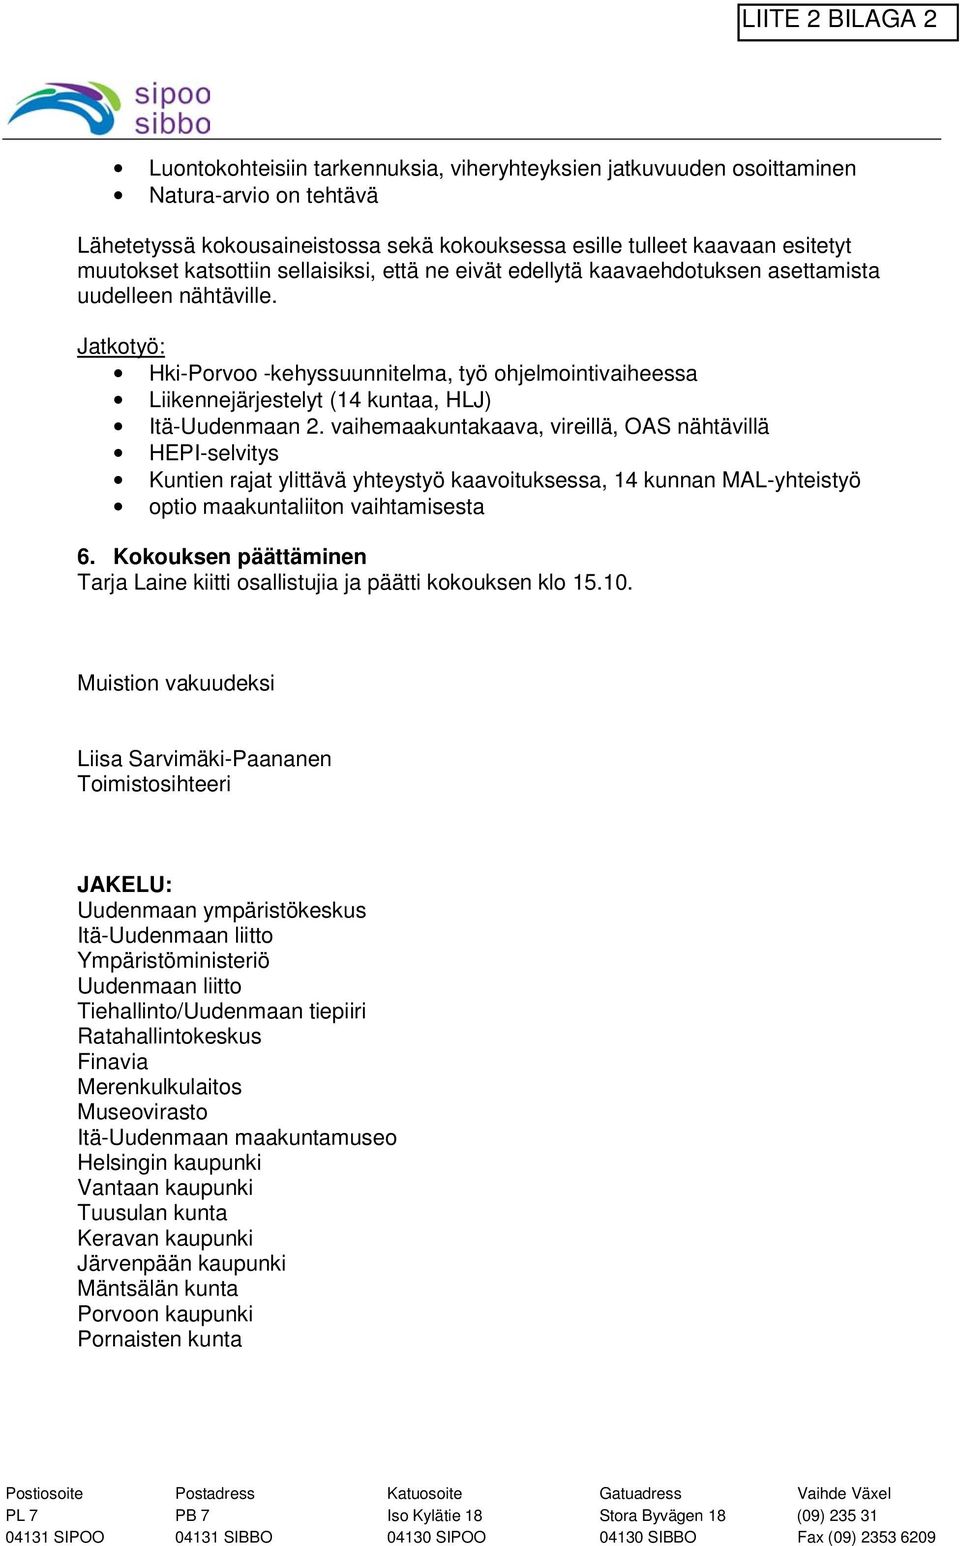 Jatkotyö: Hki-Porvoo -kehyssuunnitelma, työ ohjelmointivaiheessa Liikennejärjestelyt (14 kuntaa, HLJ) Itä-Uudenmaan 2.